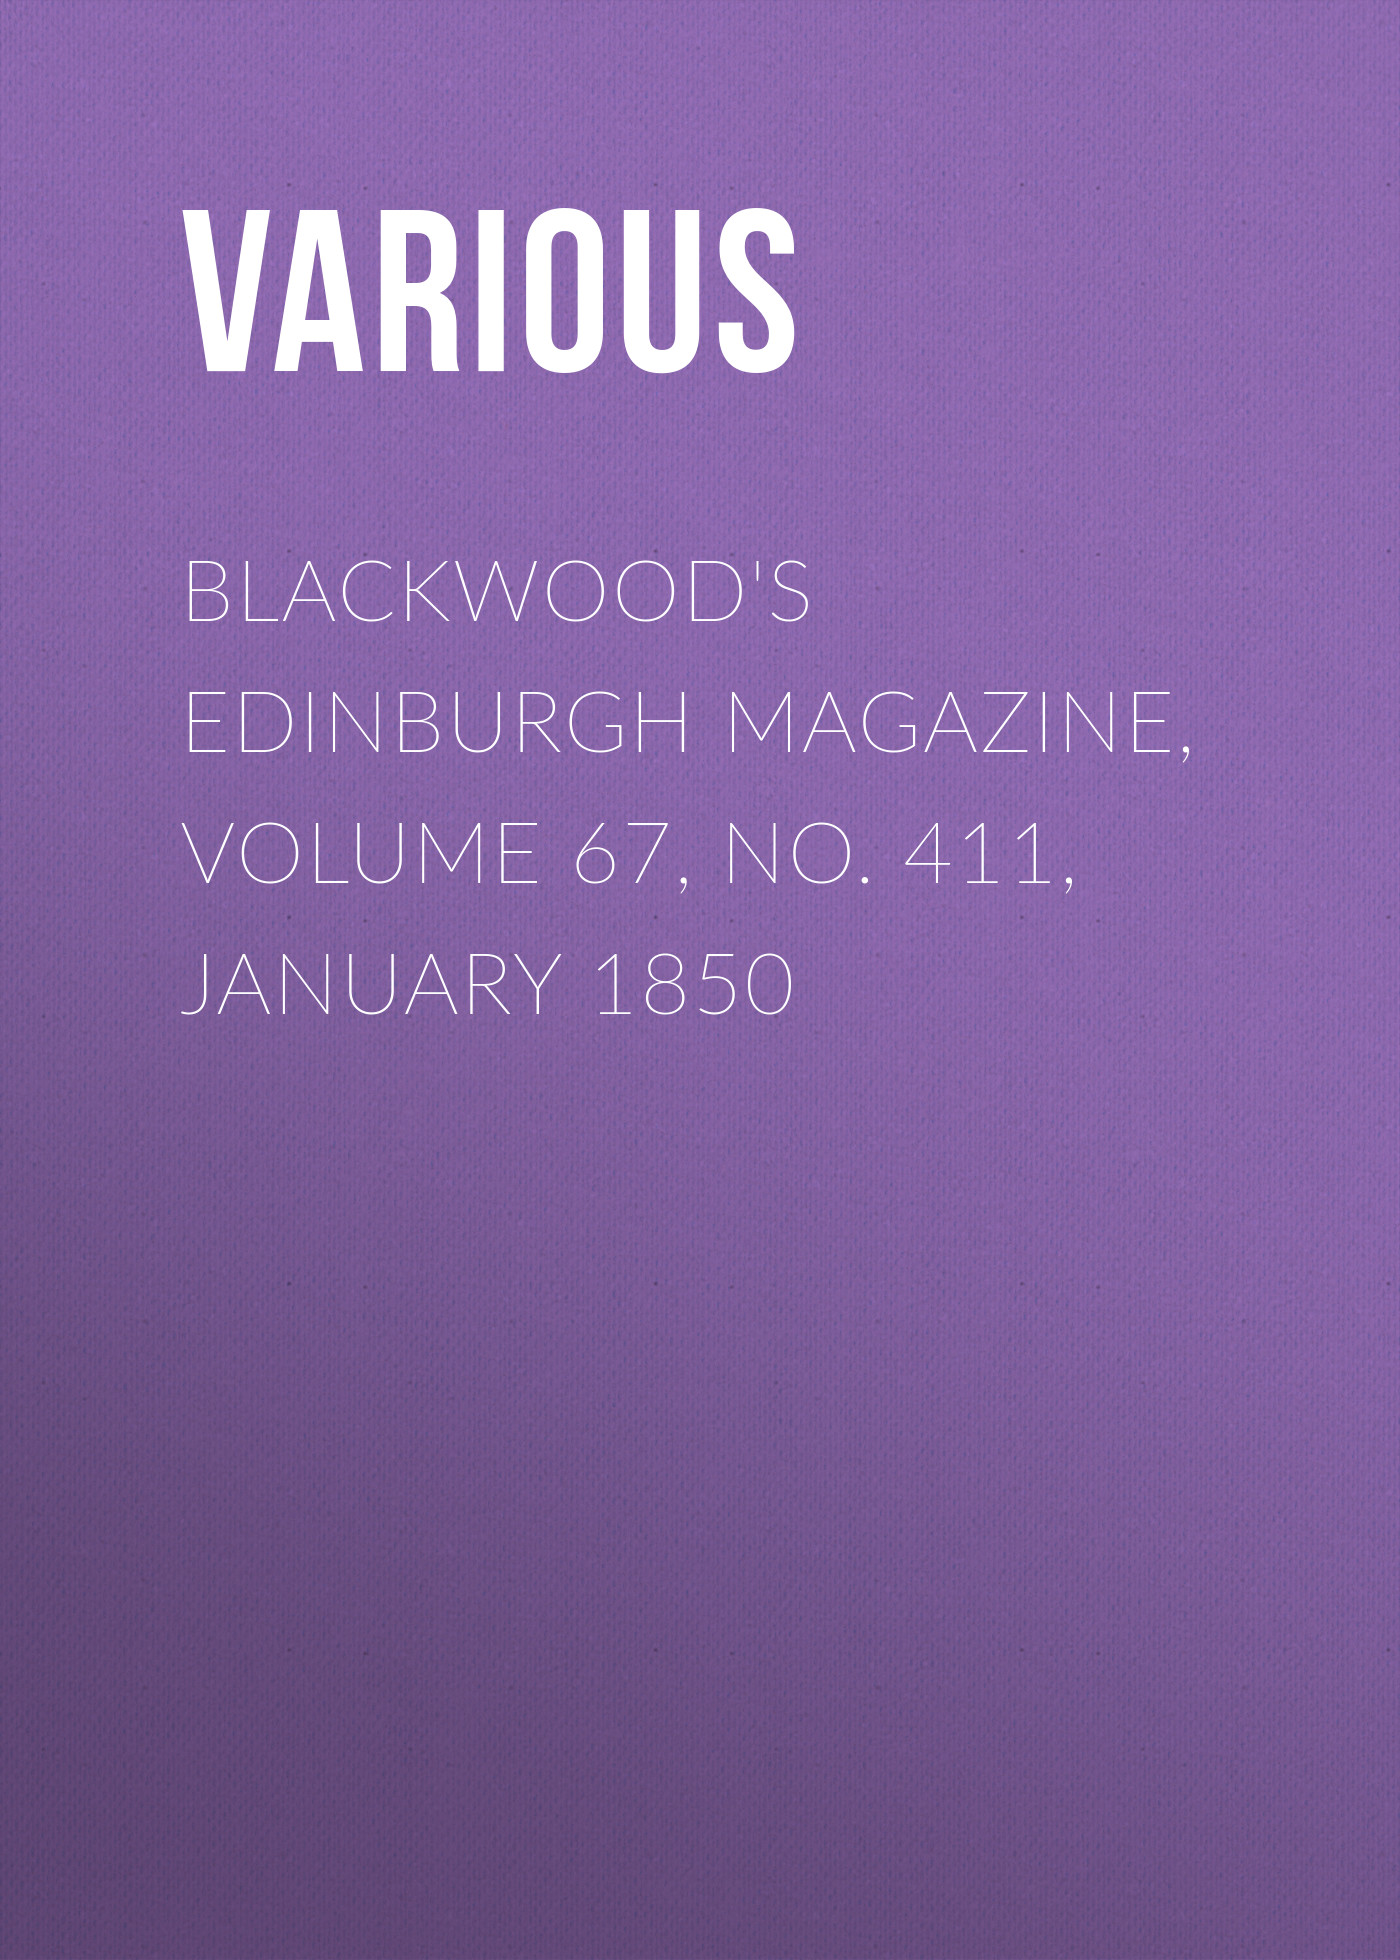 Книга Blackwood's Edinburgh Magazine, Volume 67, No. 411, January 1850 из серии , созданная  Various, может относится к жанру Журналы, Зарубежная образовательная литература, Книги о Путешествиях. Стоимость электронной книги Blackwood's Edinburgh Magazine, Volume 67, No. 411, January 1850 с идентификатором 25569575 составляет 0 руб.